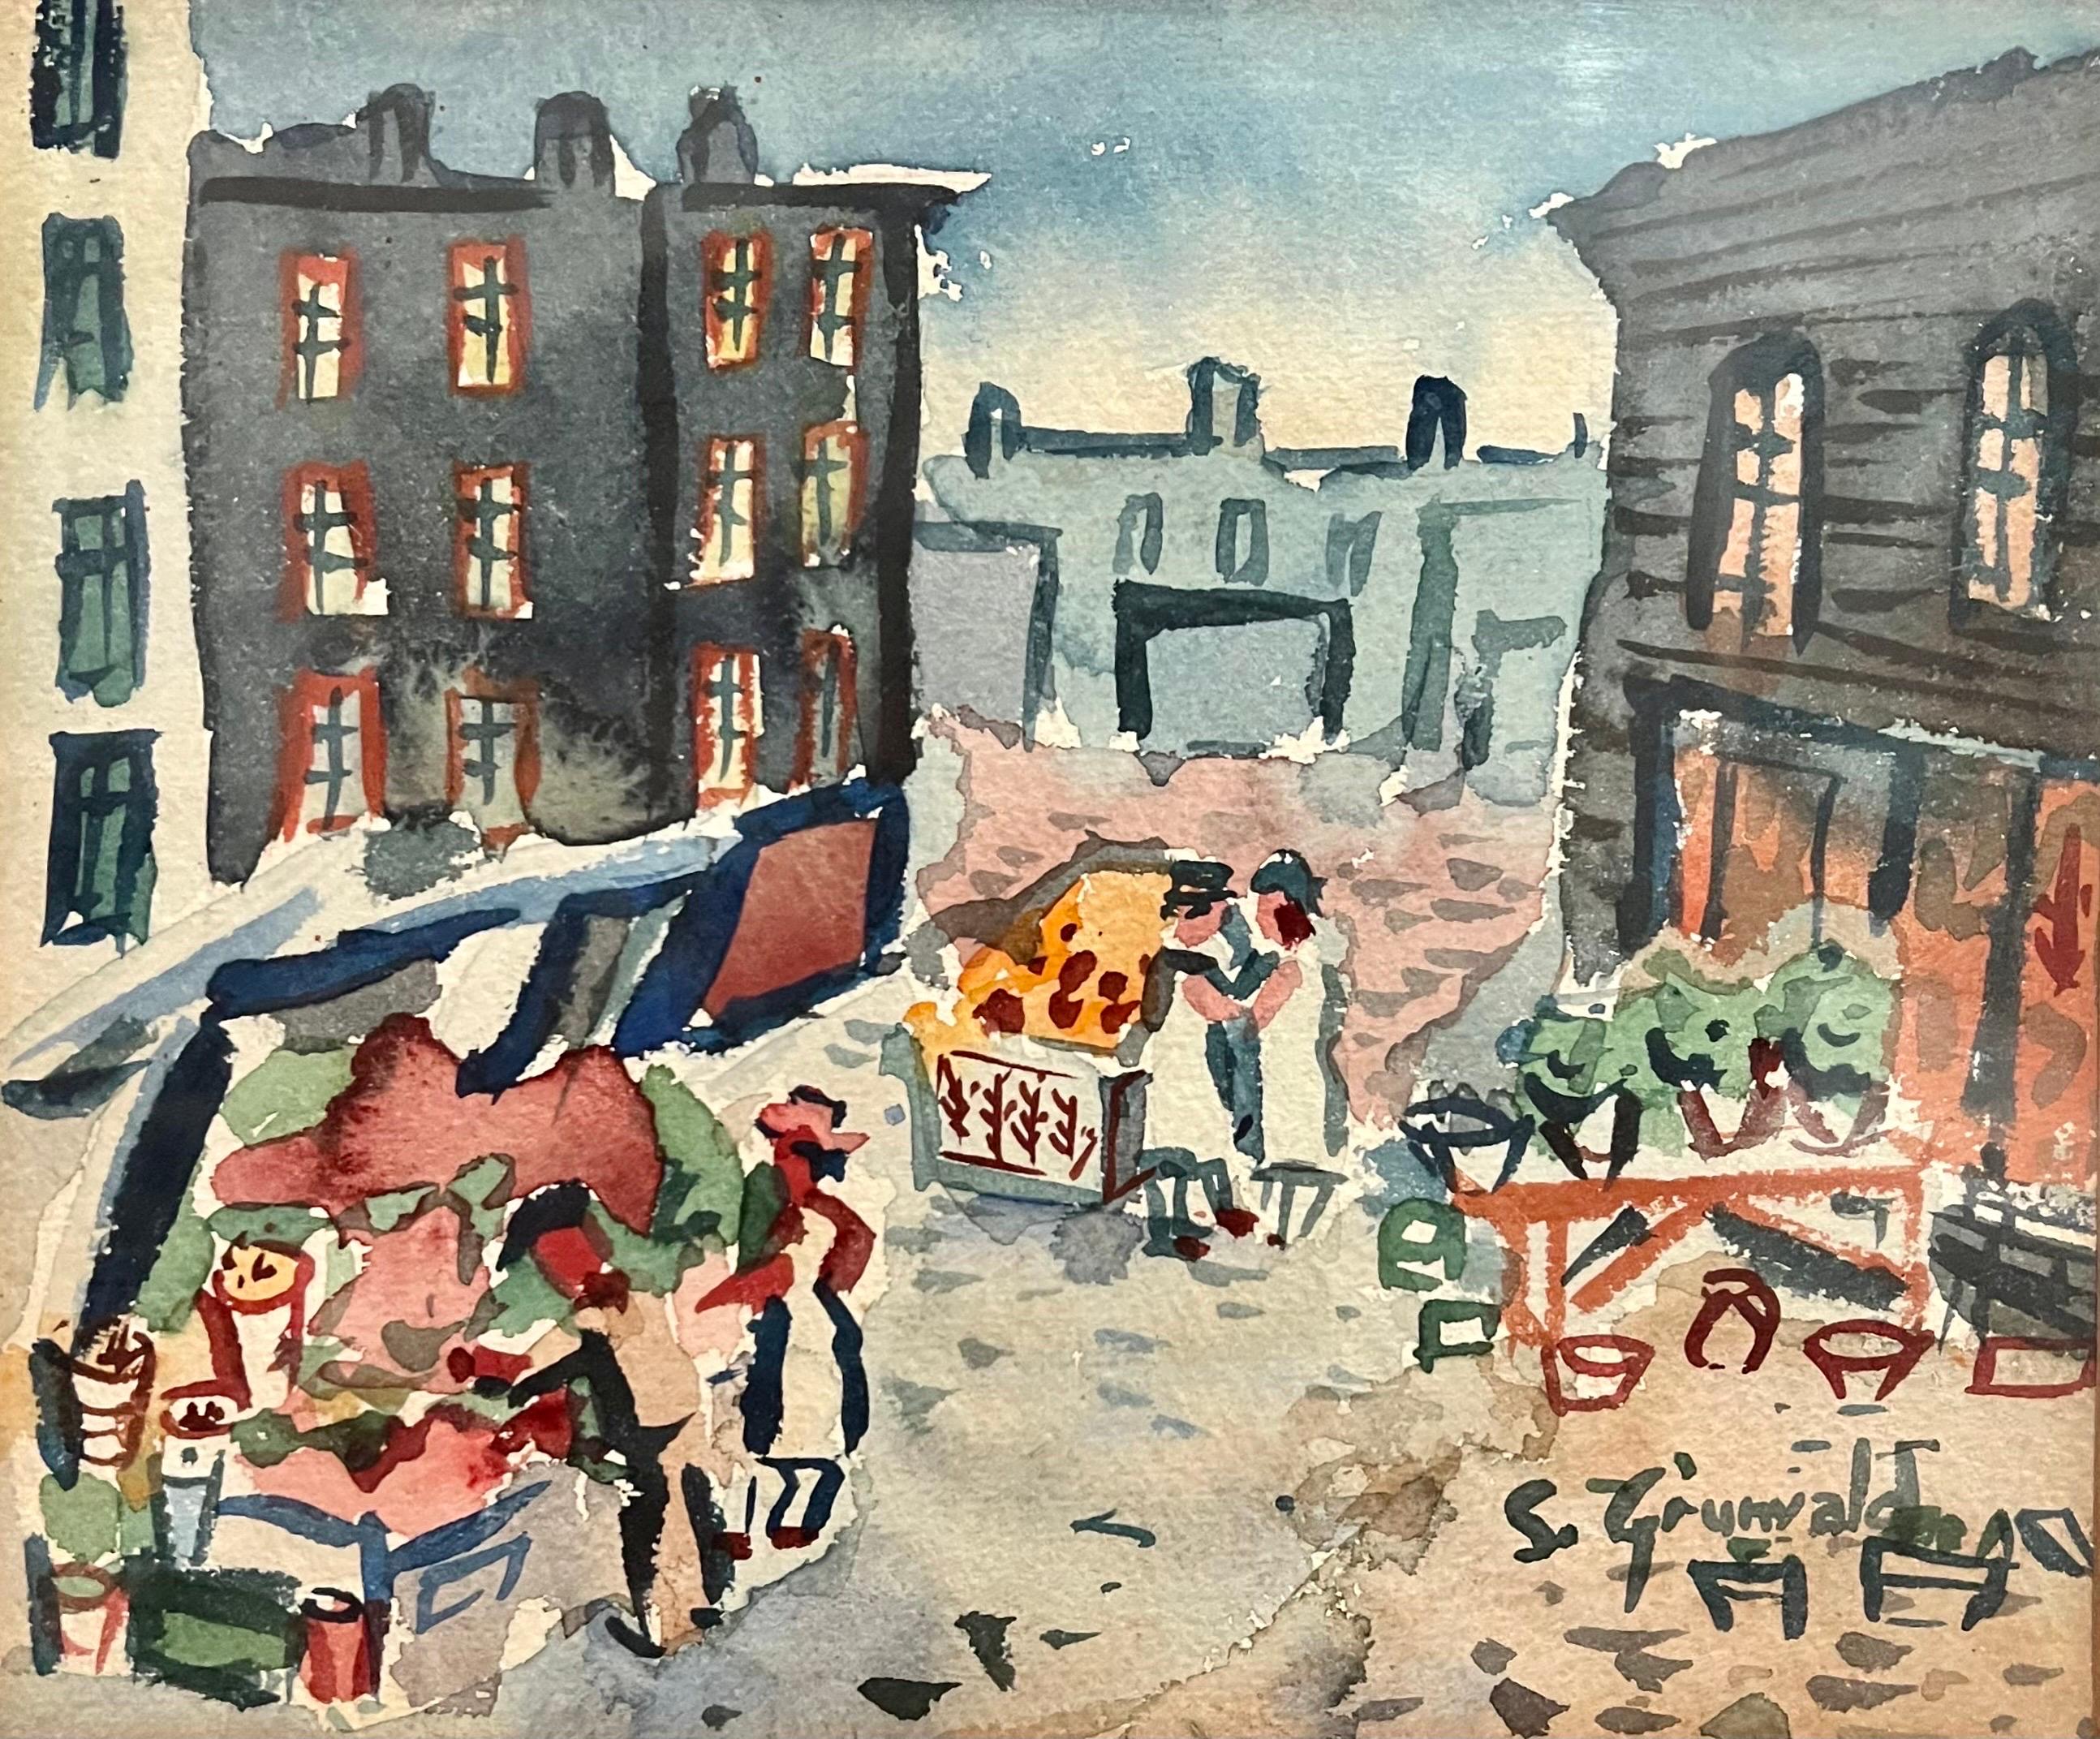 Der Markt,  (fauvistisches Gemälde einer NYC-Szene) 1940er Jahre.
Bild ist  10X 11,5 Zoll. Handsigniert unten rechts
Lower East Side Mietskasernen Schubkarrenmarkt

Samuel Grunvald war ein in Ungarn geborener amerikanischer WPA-Künstler, der für